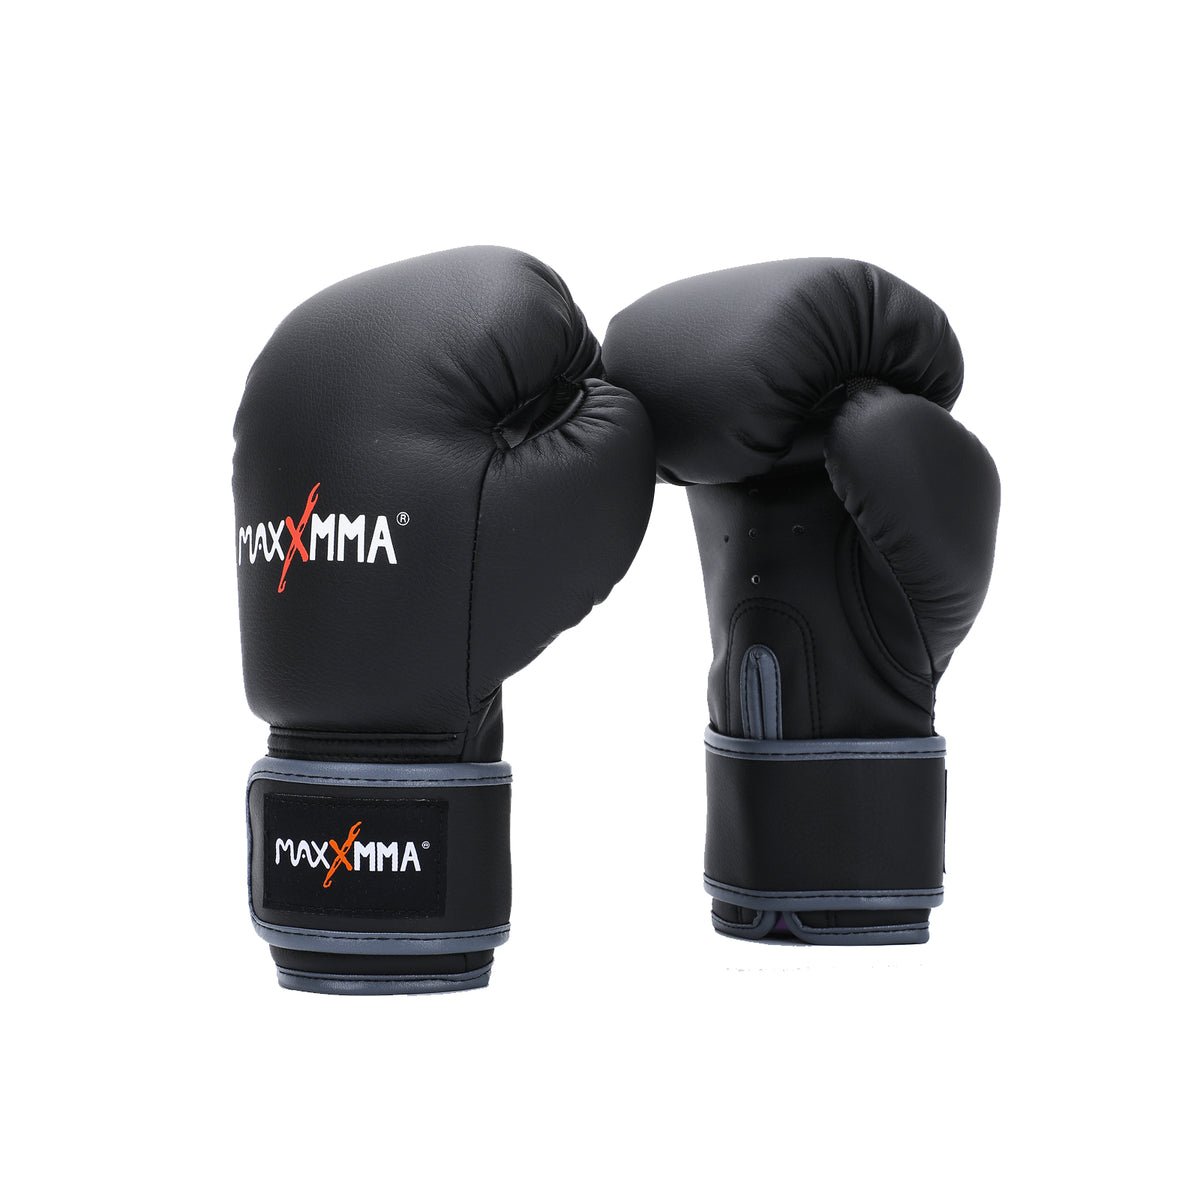 Youth Training Boxing – maxxmma-world Glove